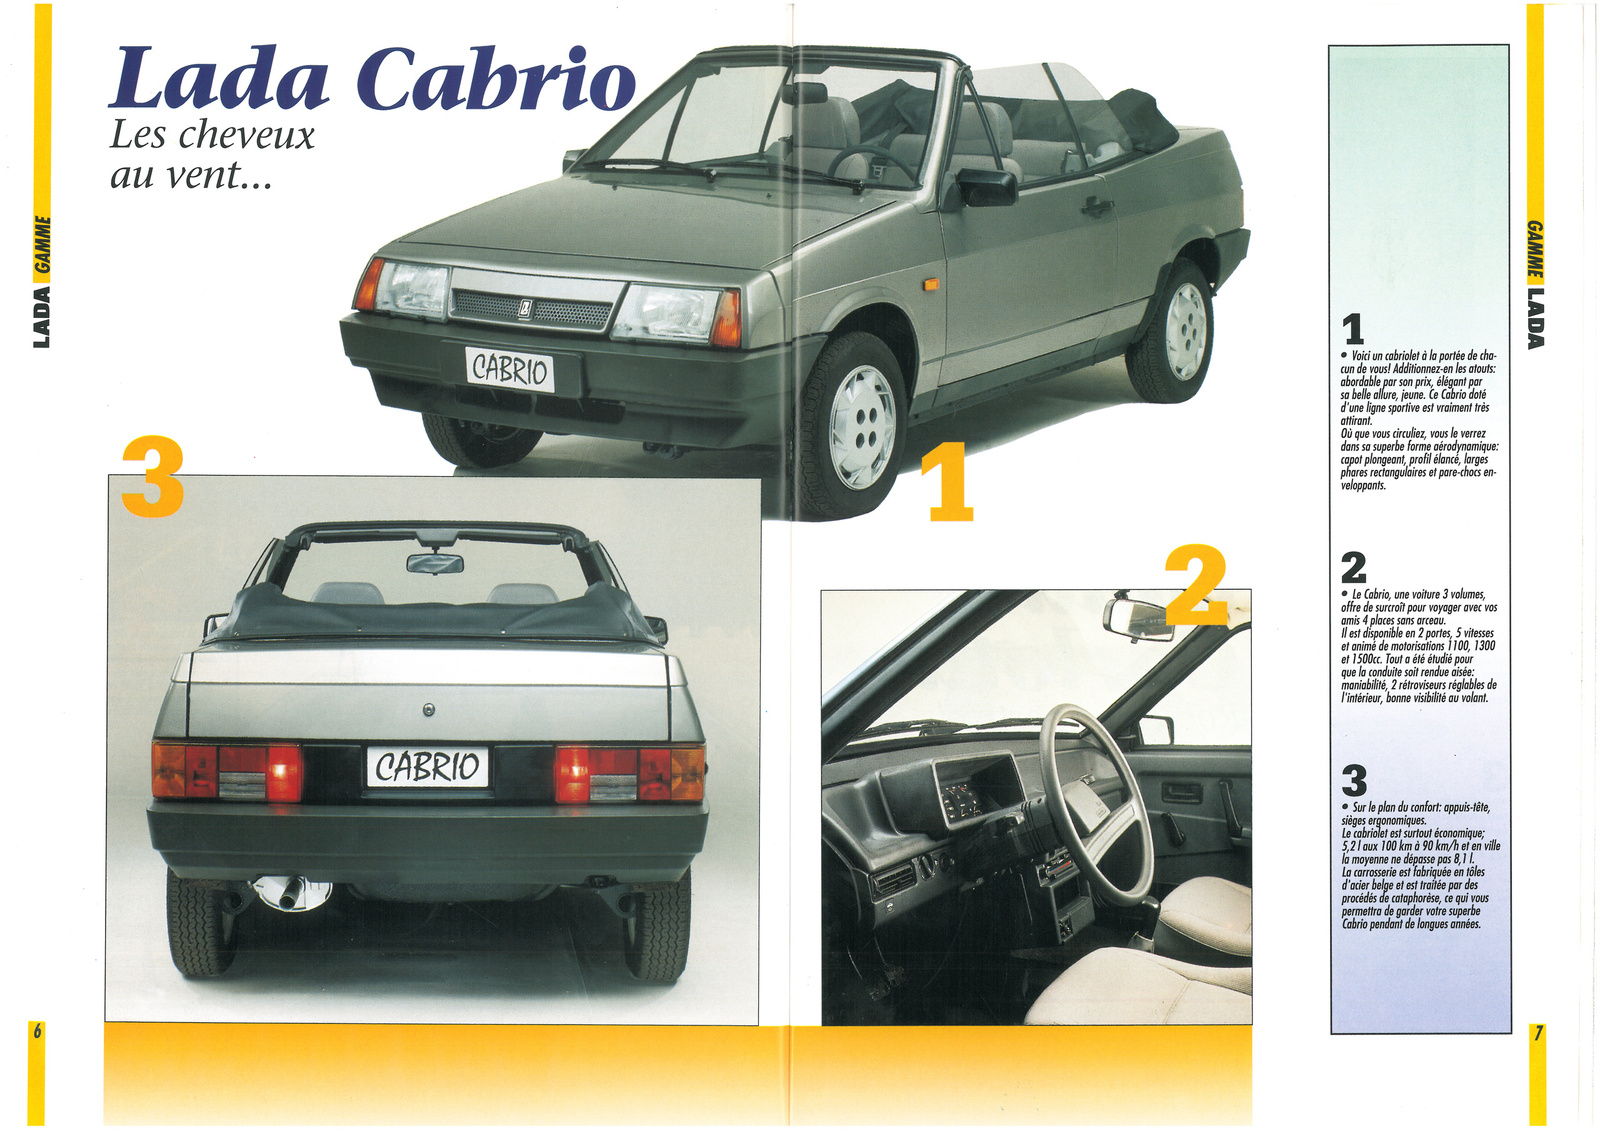 Lada magazine 1994-2